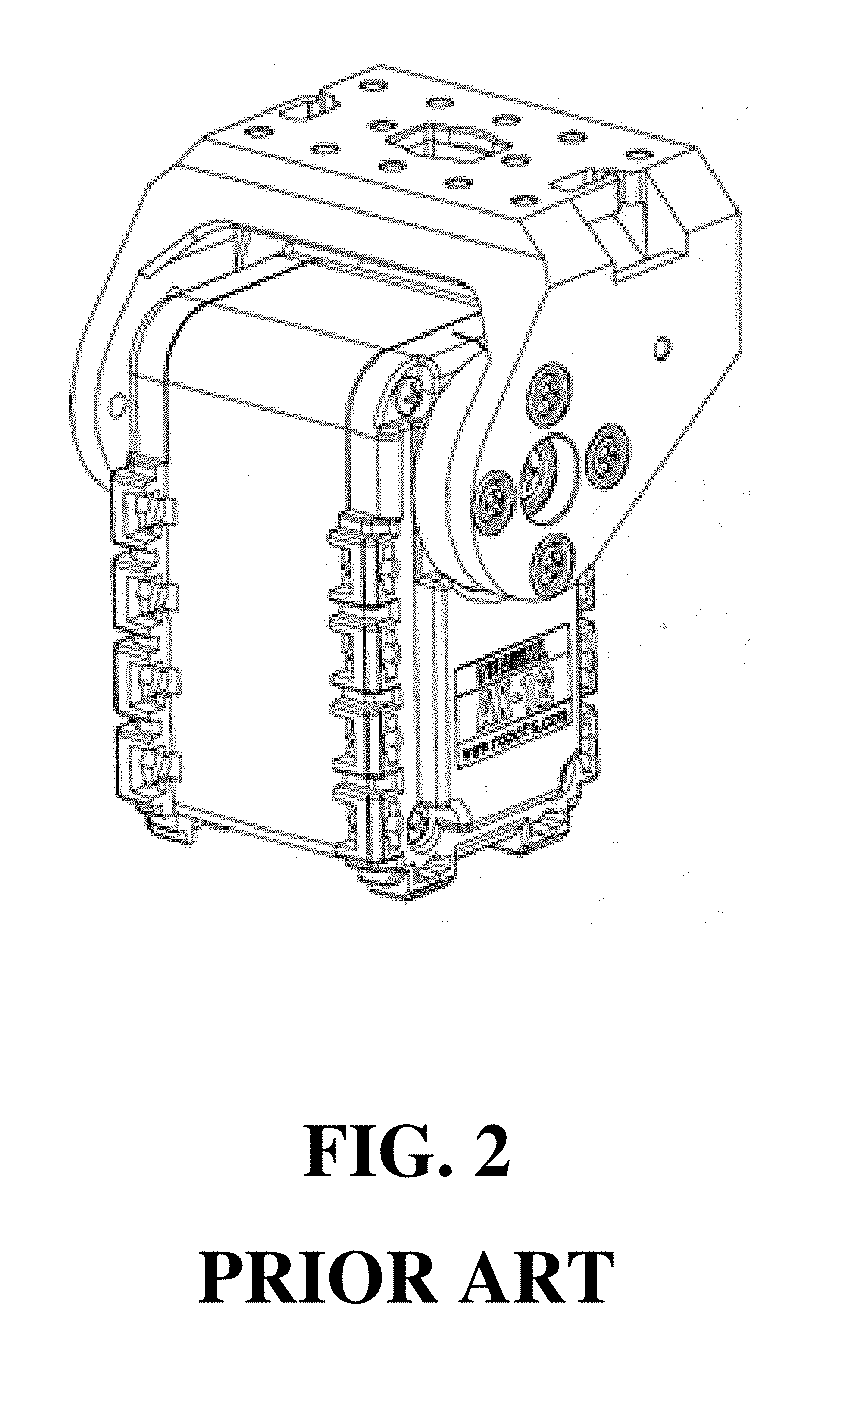 Semi-hollow actuator module